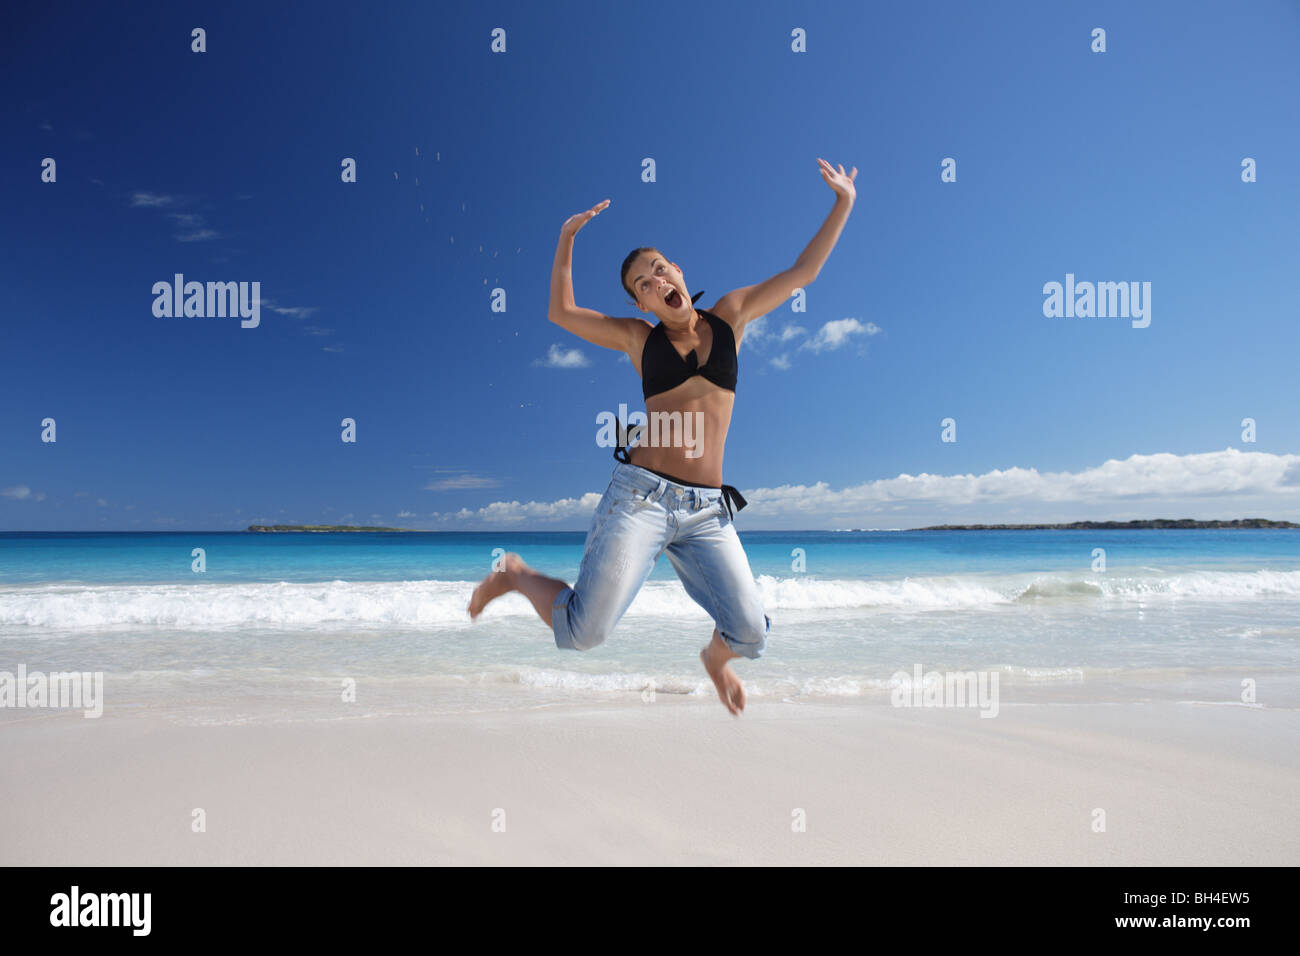 Junge Frau in die Luft springen, auf einem einsamen tropischen Strand lächelnd Stockfoto